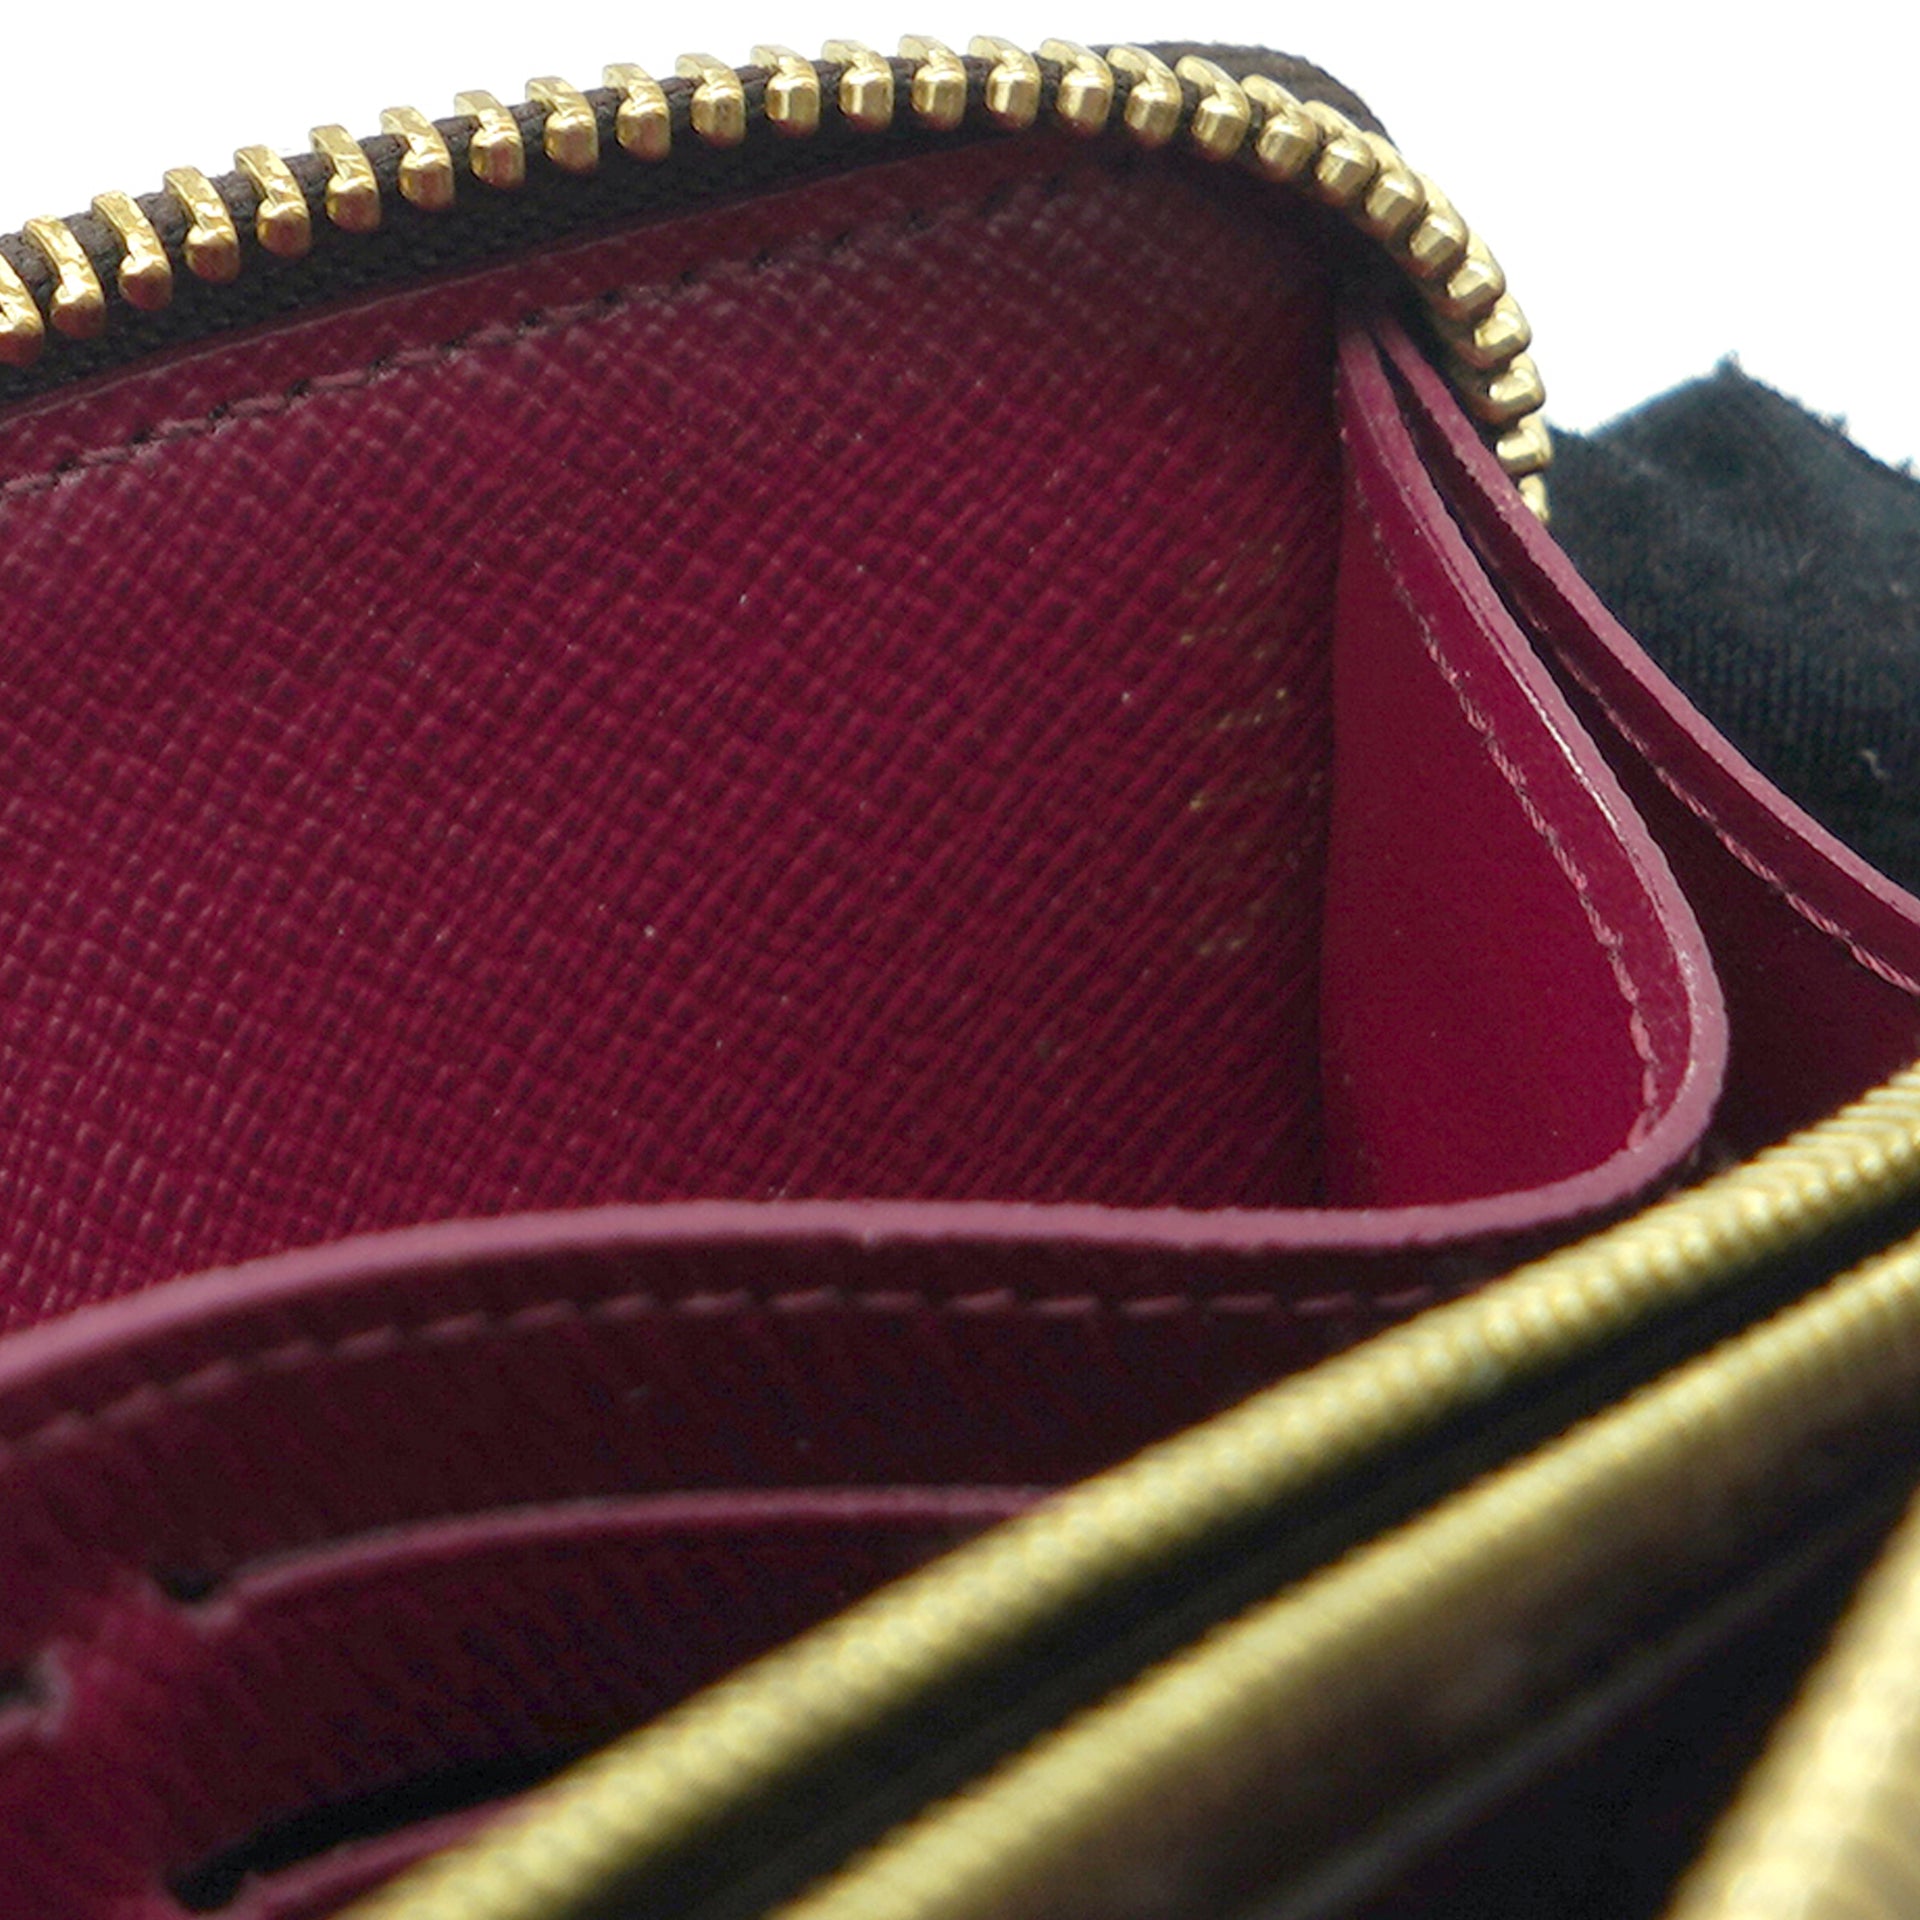 Louis Vuitton - Damier Ebene Zippy Wallet, Dust Bag included, Authentic